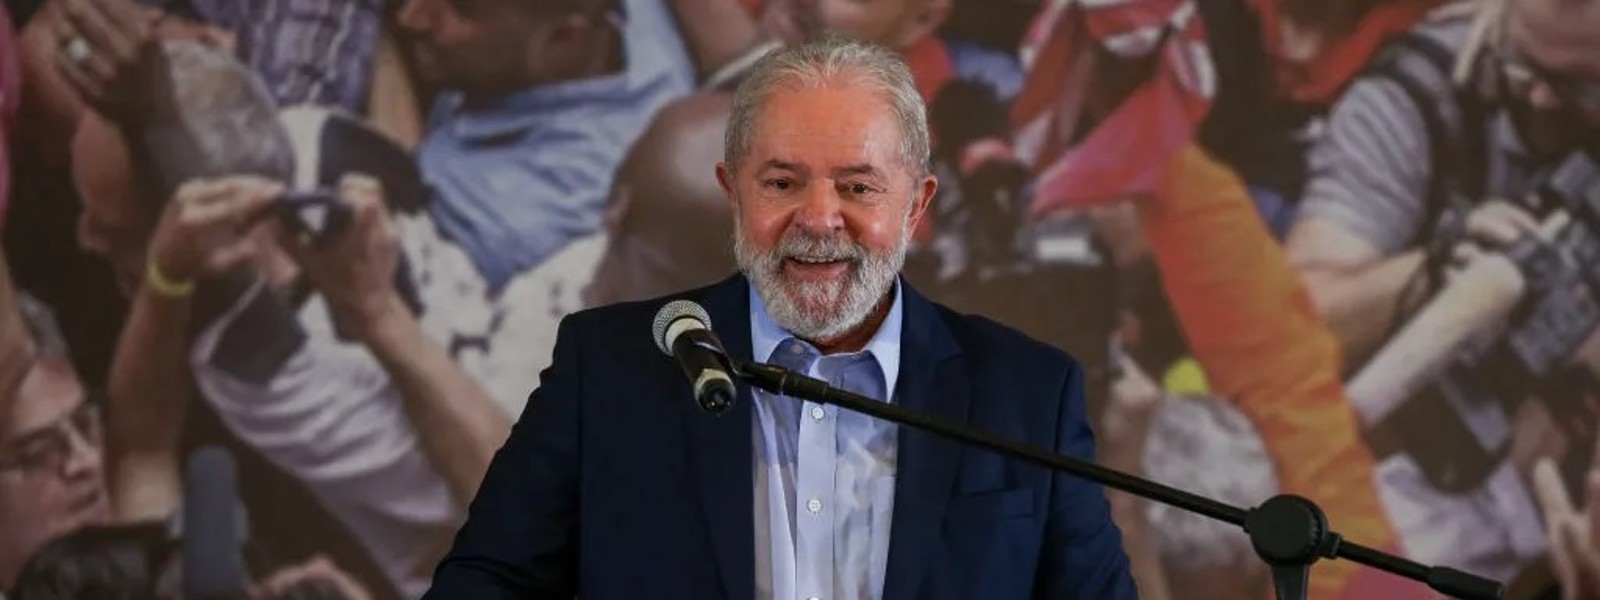 Lula narrowly defeats Bolsonaro